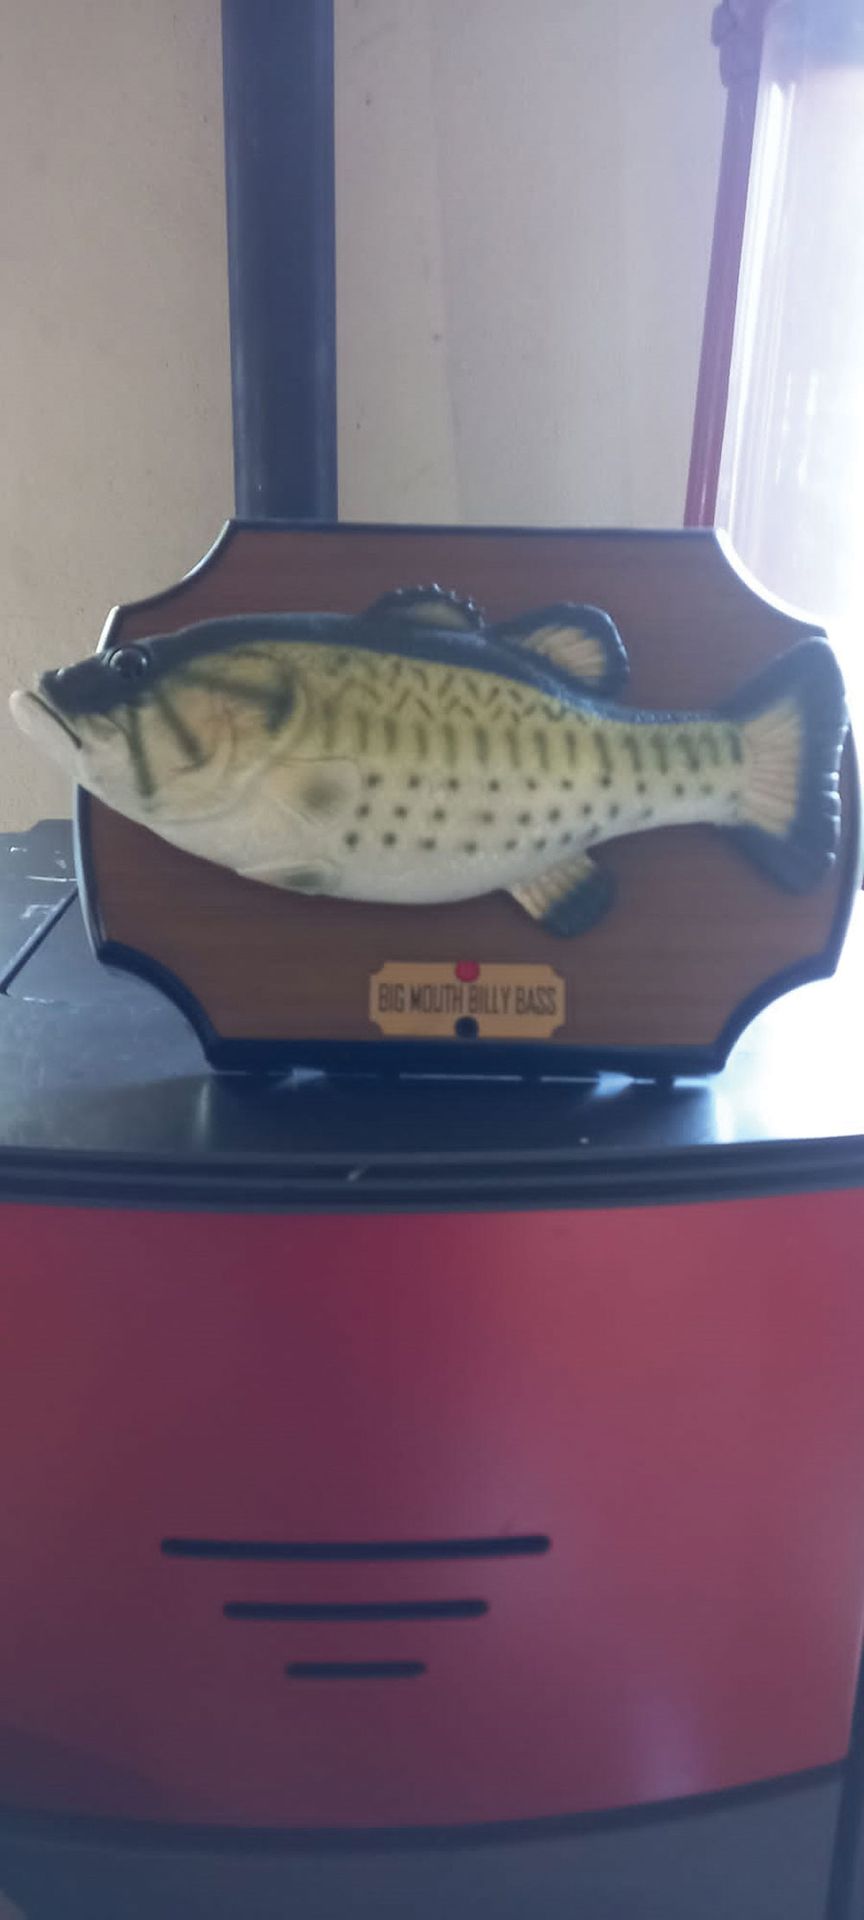 Big Mouth Billy Bass est un poisson chantant fabriqué pa…